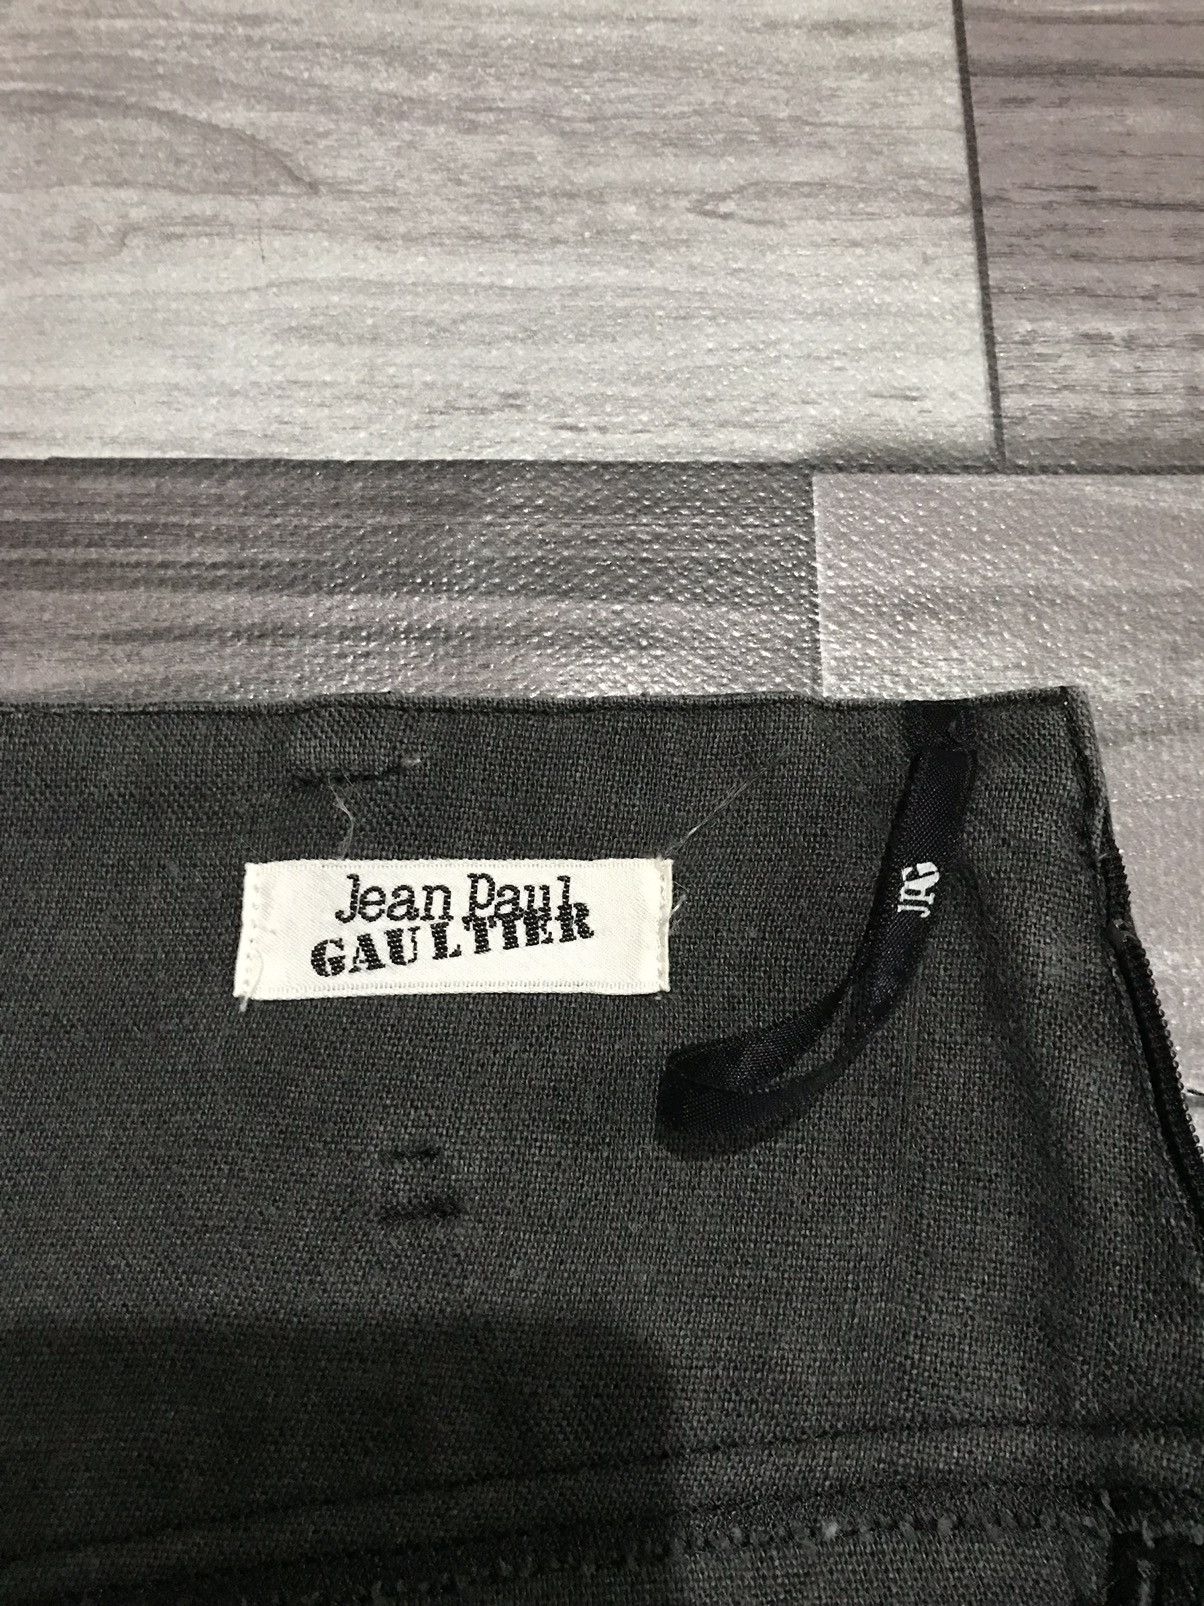 JPG Jean Paul Gaultier pants - R9 - 7